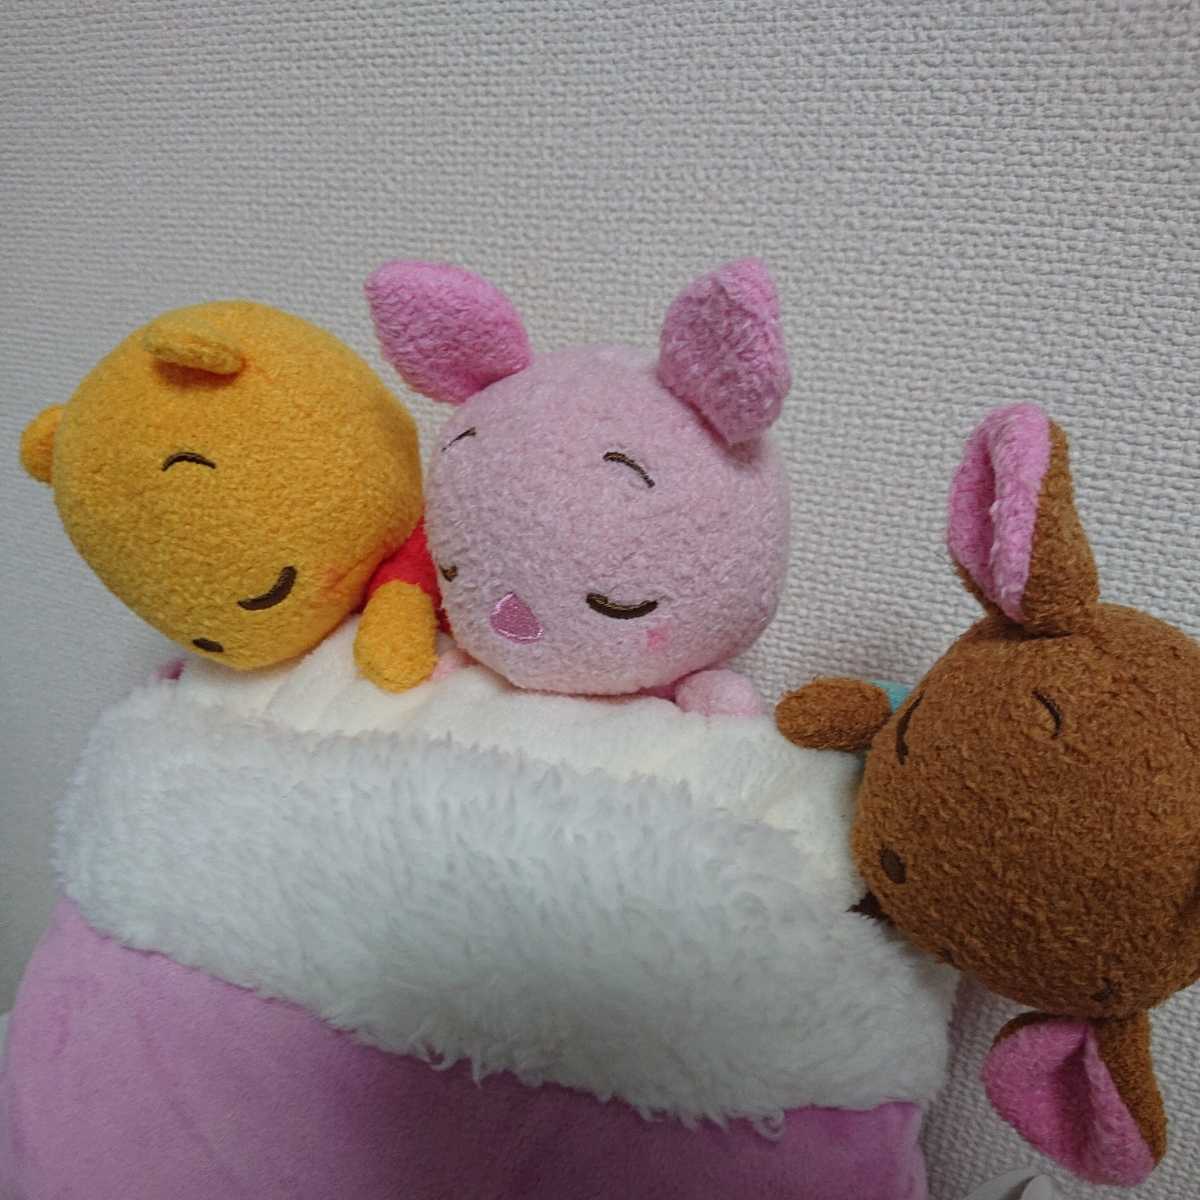  новый товар Disney Disney магазин ограничение Винни Пух покрывало примерно 70×100. покрывало на колени одеяло мягкая игрушка Пятачок розовый медведь 